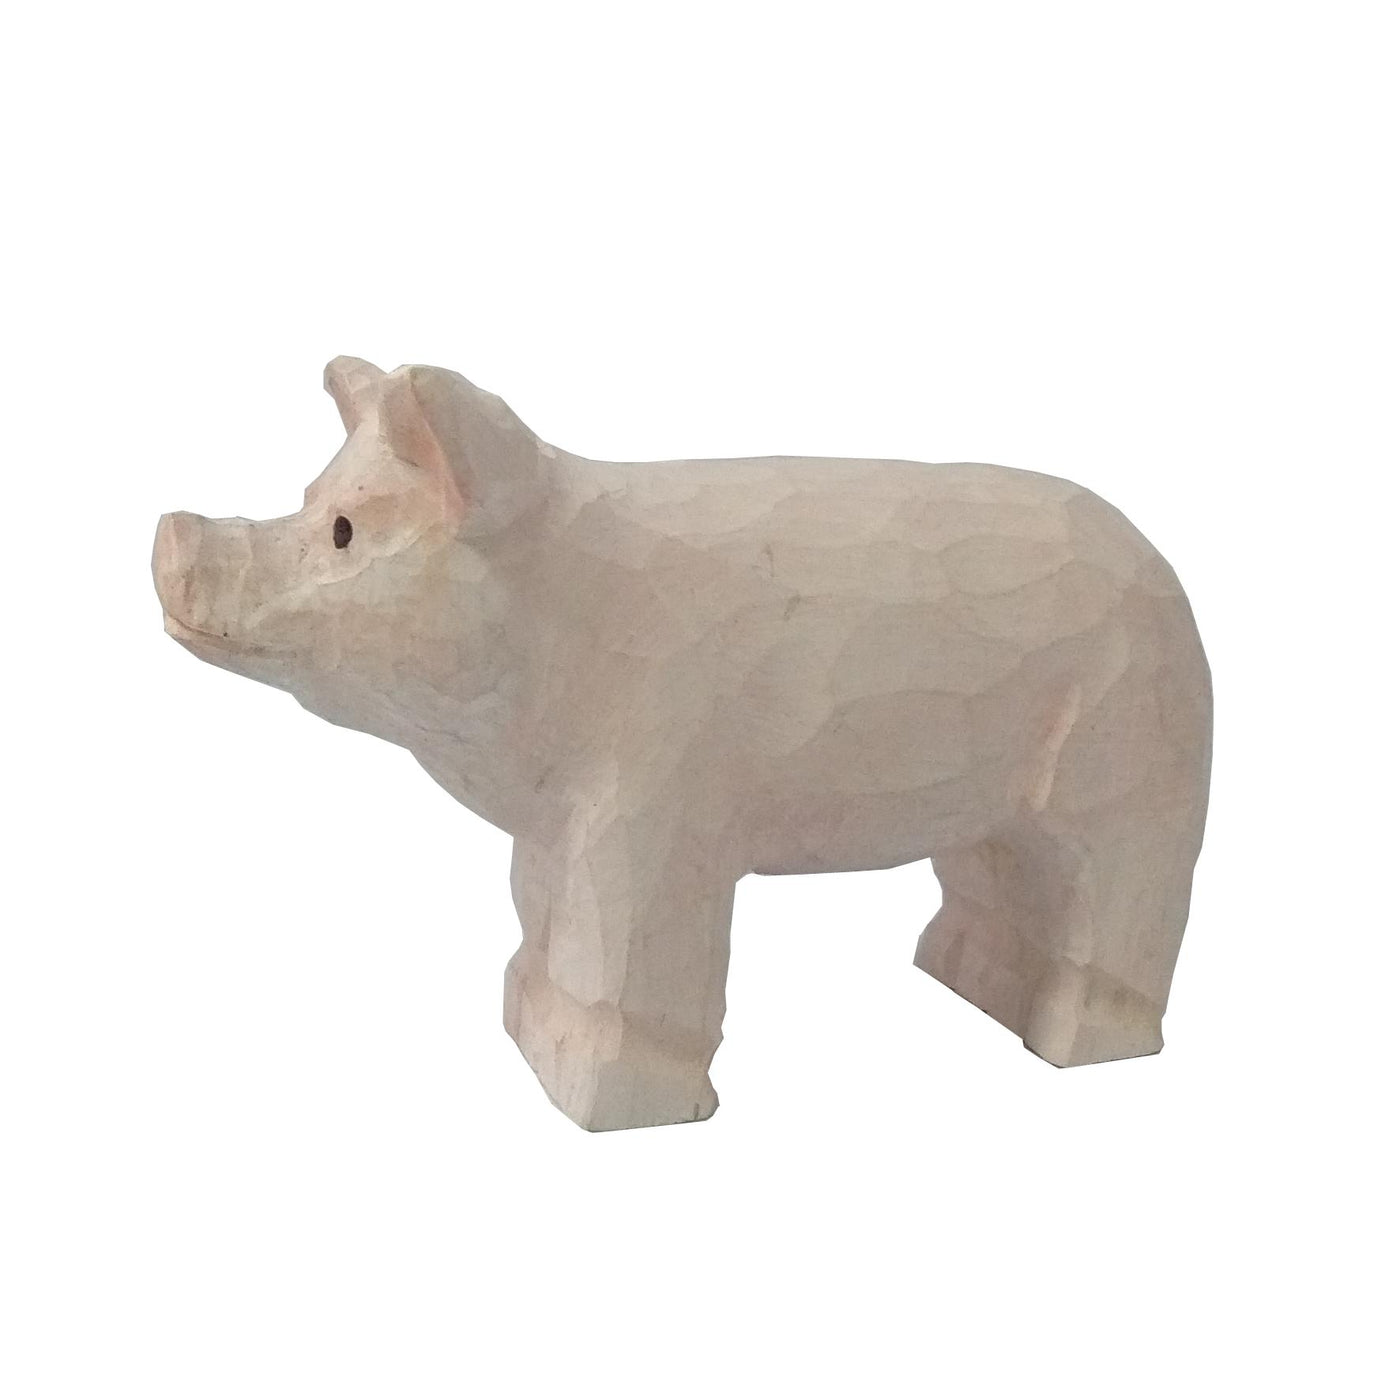 Wudimals® Wooden Piglet Animal Toy